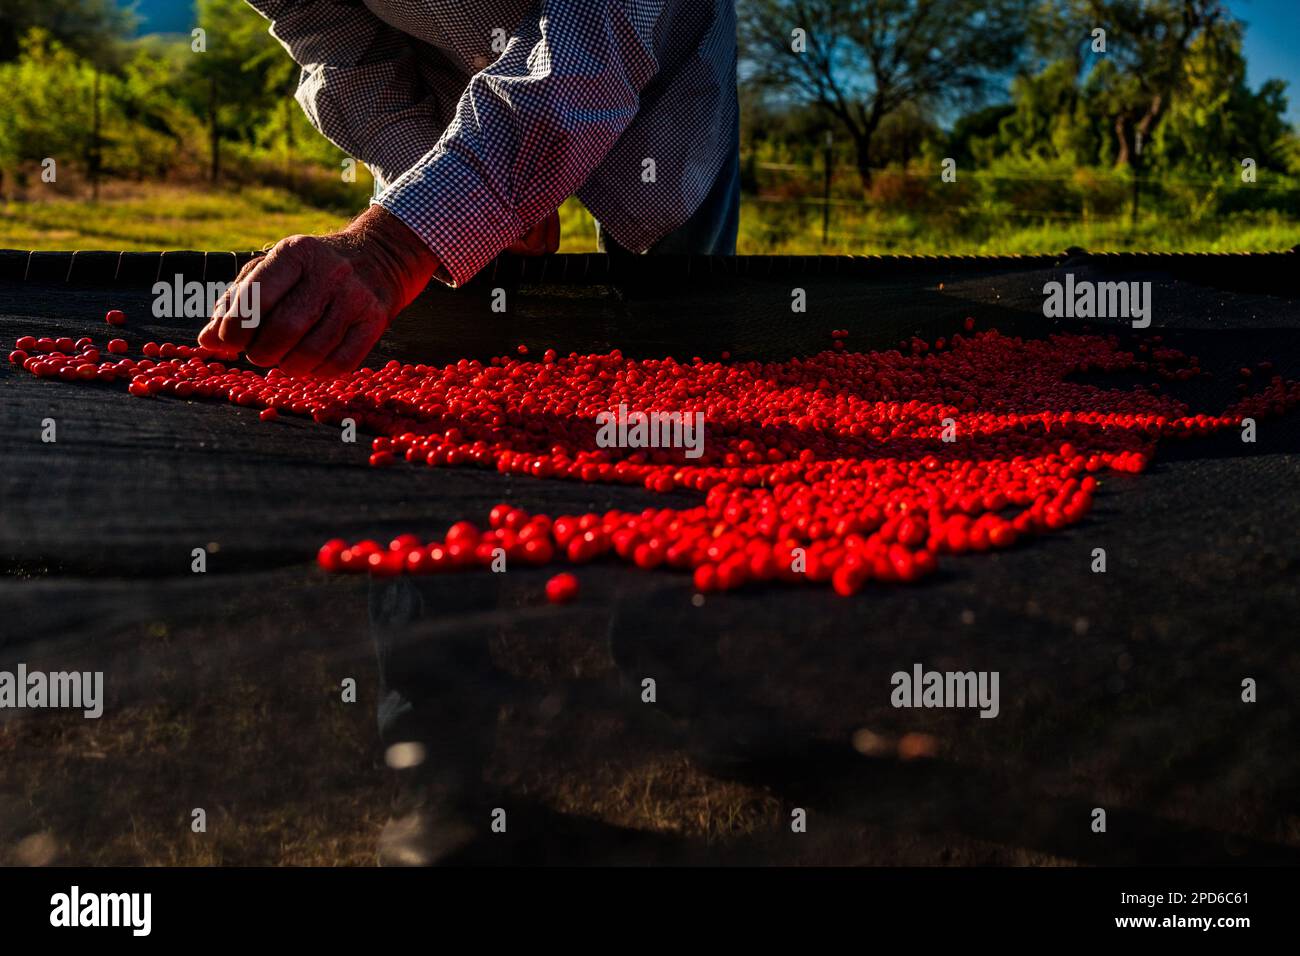 Un rancher messicano controlla casualmente i peperoncini, una varietà selvatica di peperoncino, durante il processo di essiccazione al sole in una fattoria vicino a Baviácora, Messico. Foto Stock